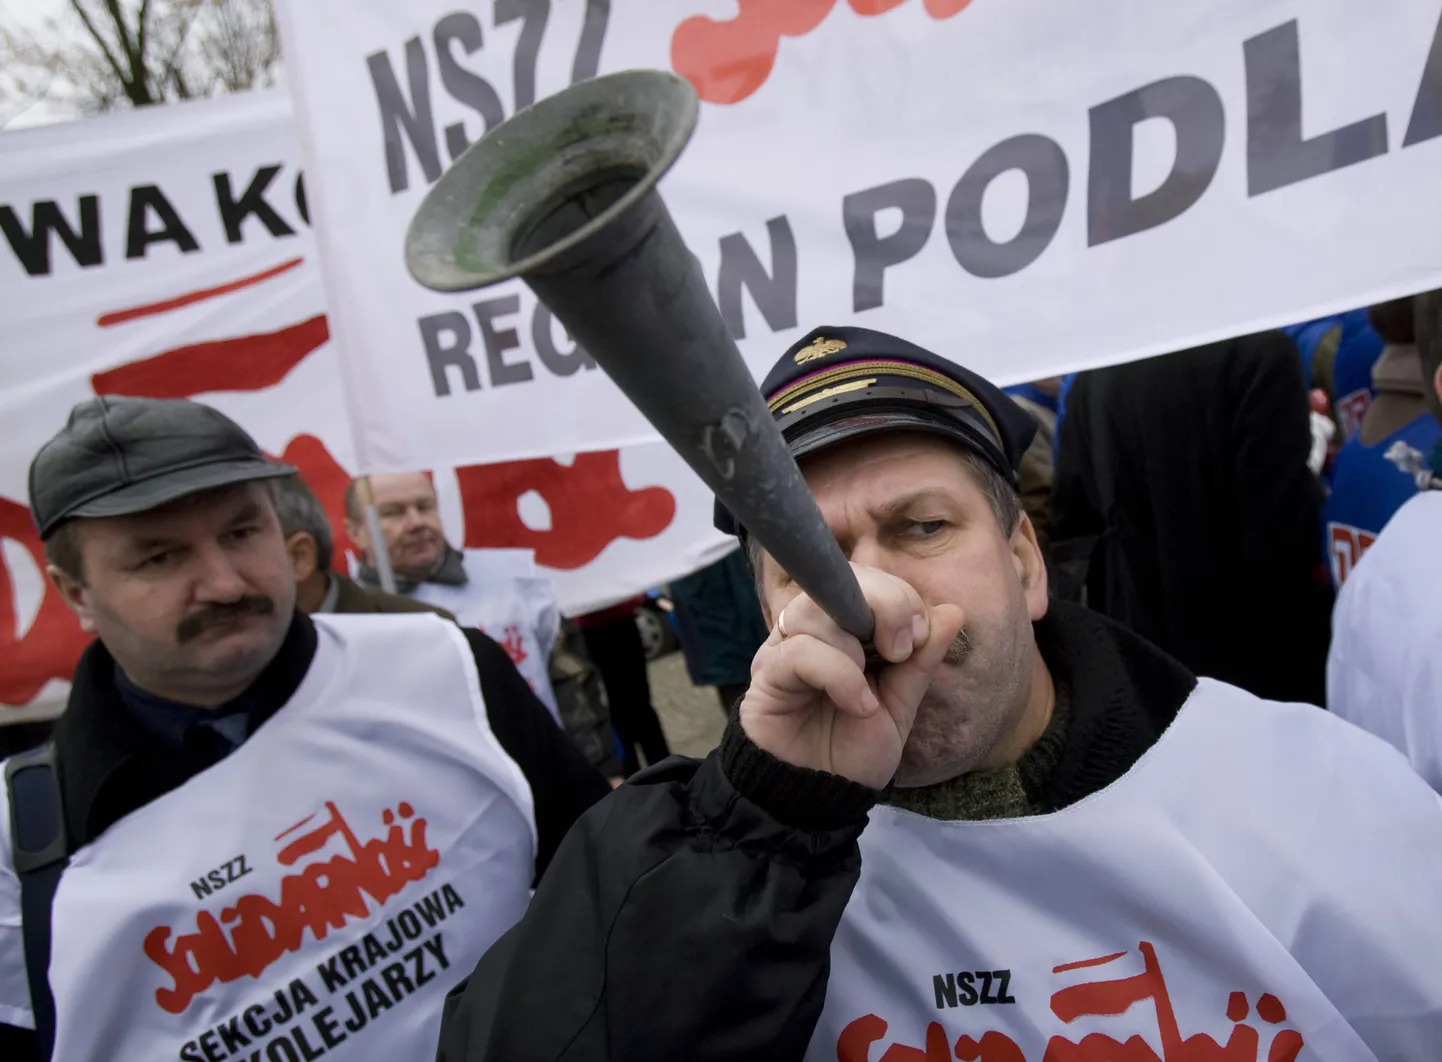 Poola tööline pasunaga meeleavaldusel.